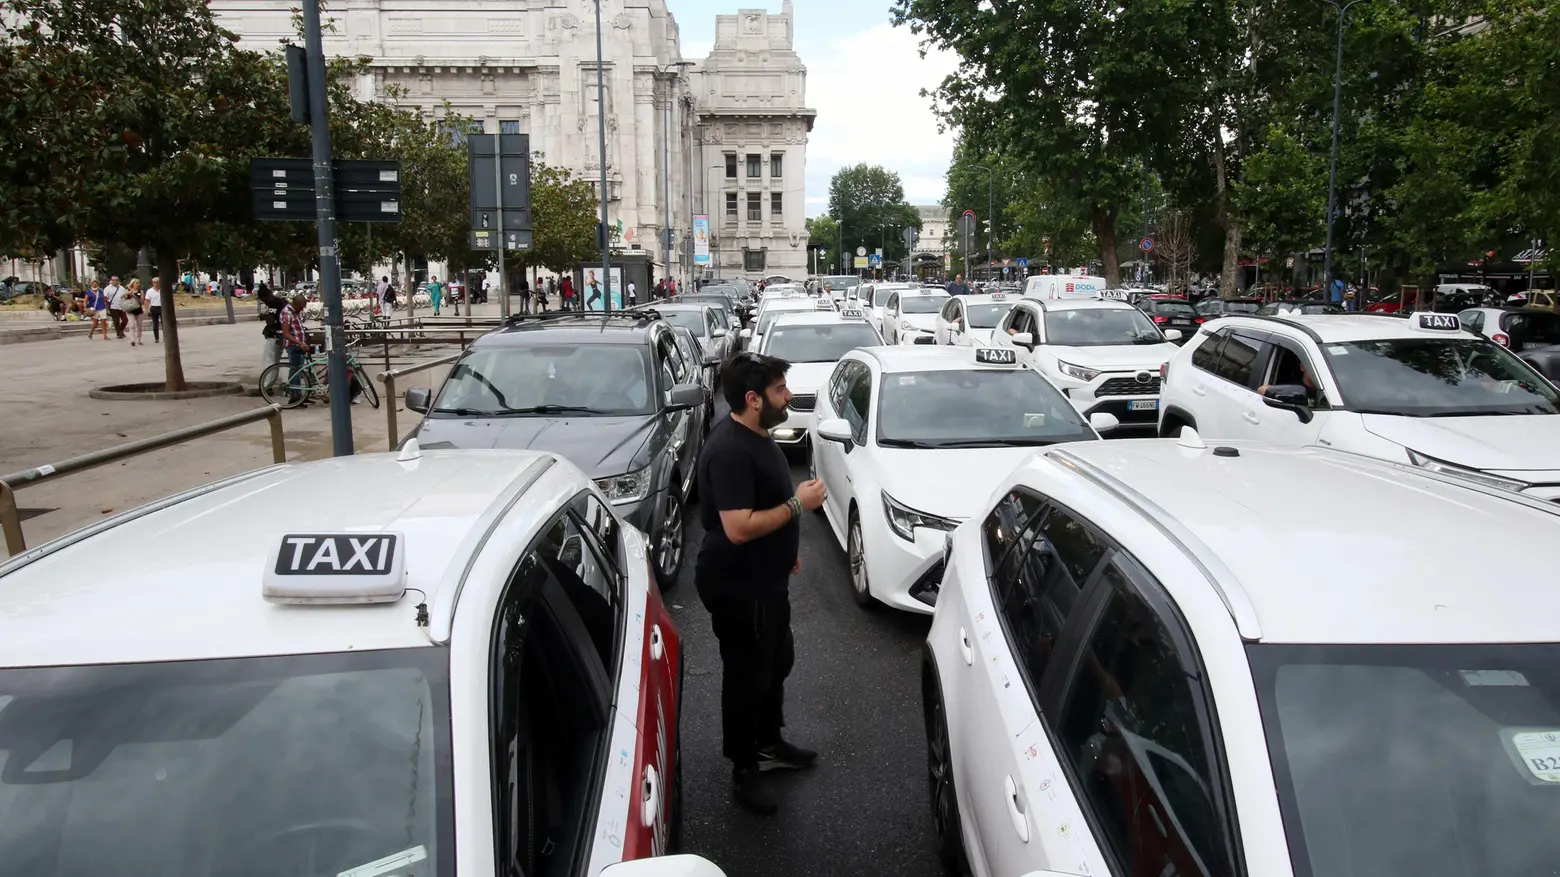 Mobilità salata  La Regione dice sì  al ritocco delle tariffe  Taxi più cari da luglio